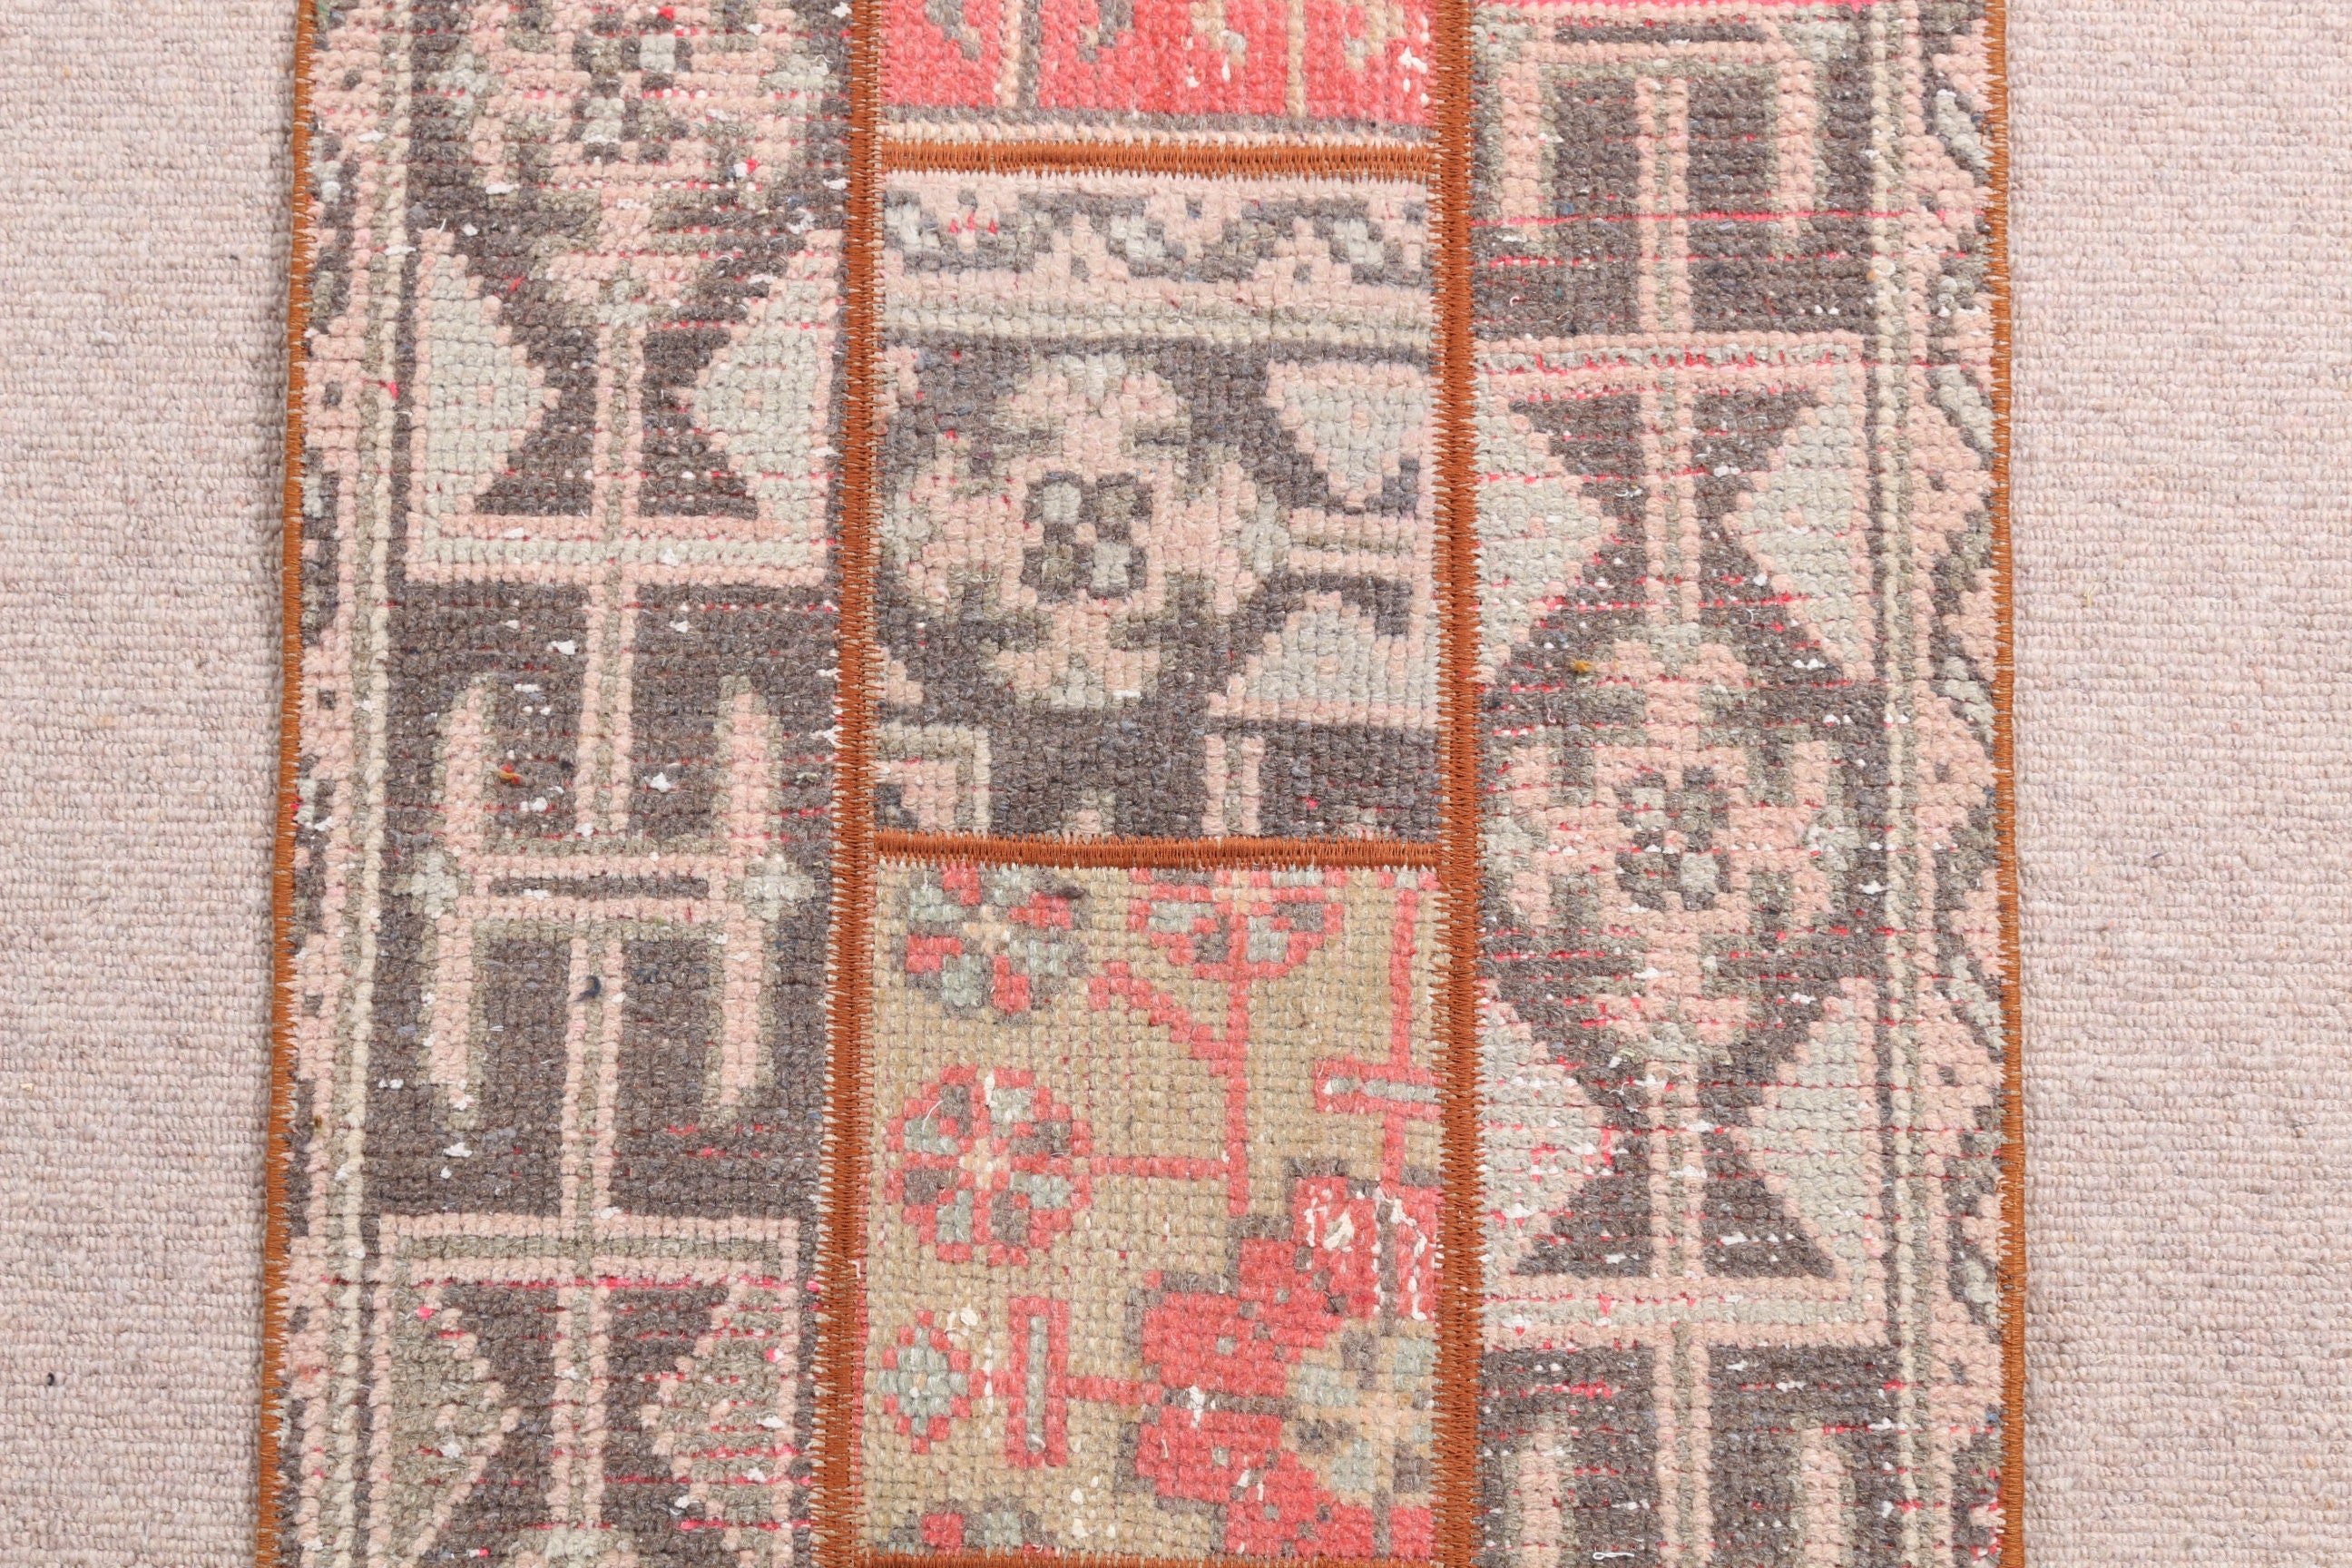 Floor Rugs, Black Bedroom Rug, Eclectic Rug, Rugs for Nursery, Turkish Rug, Wool Rug, 1.7x3.9 ft Small Rugs, Vintage Rugs, Door Mat Rug